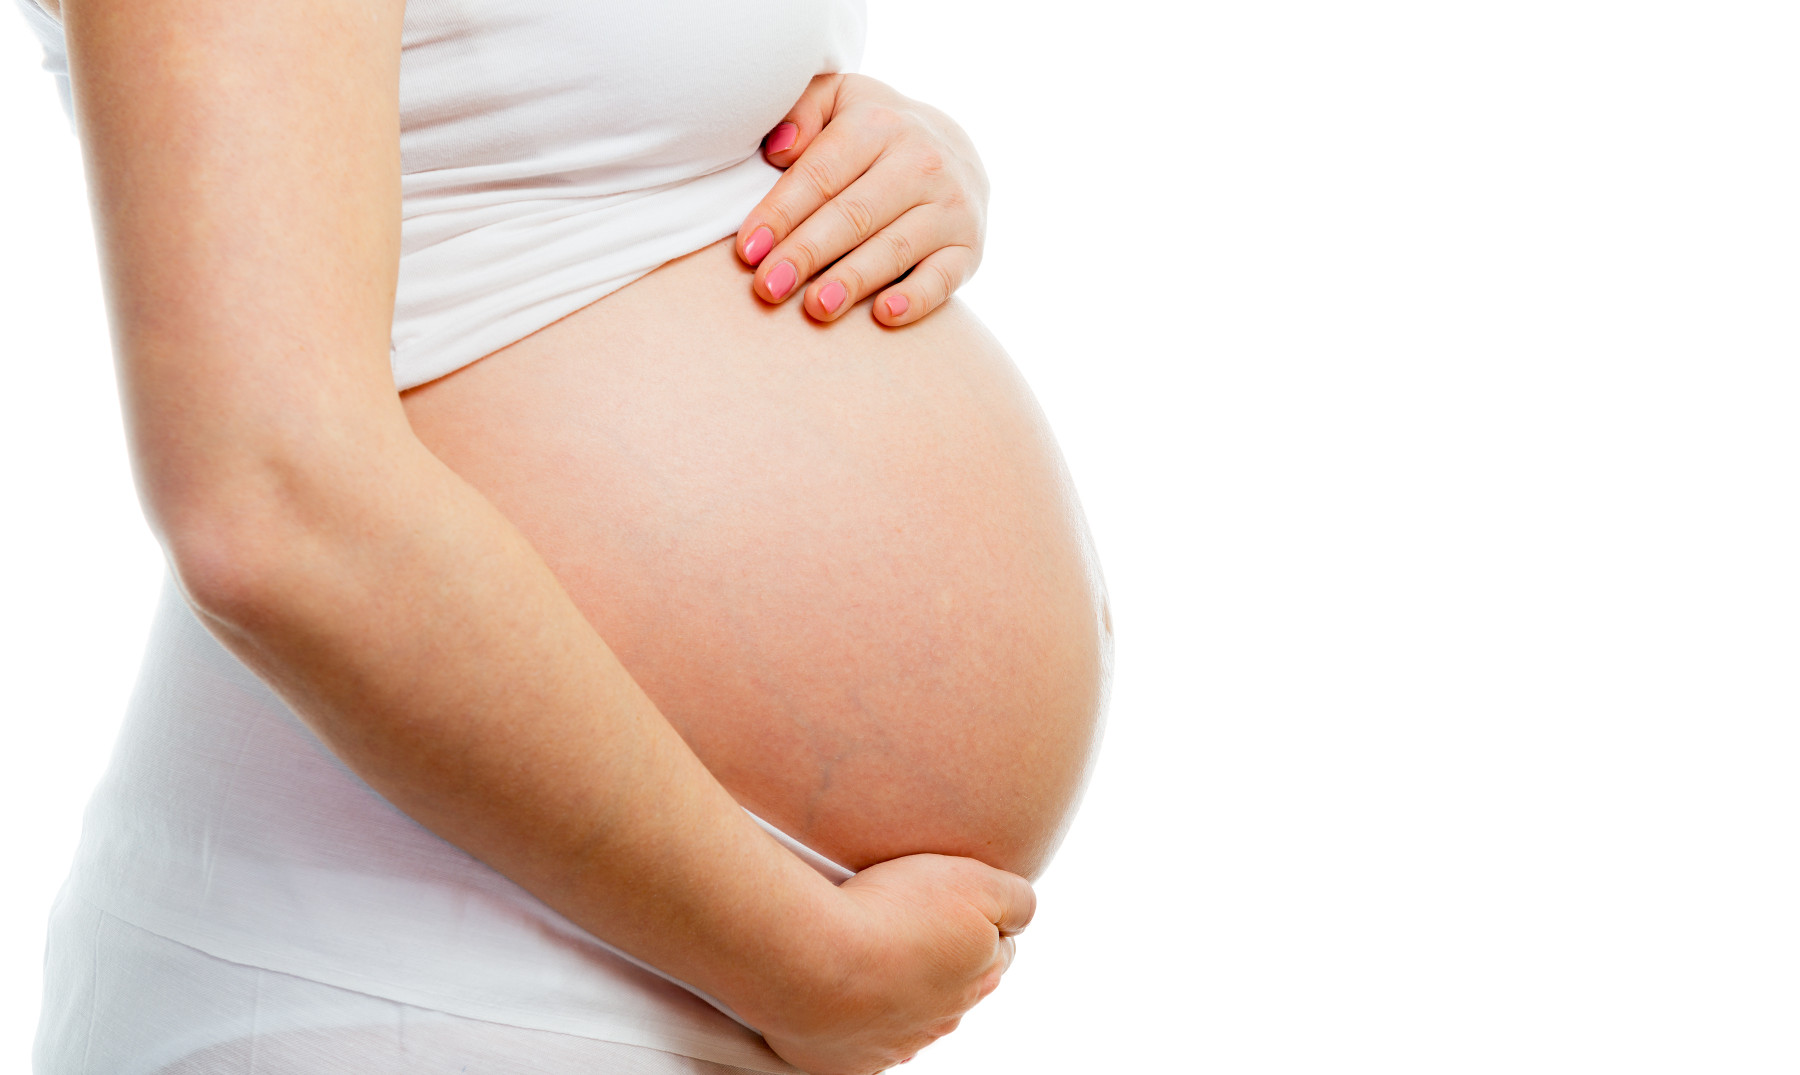 Tengo el virus del papiloma y estoy embarazada. ¿Puede afectar al bebé dentro del vientre?